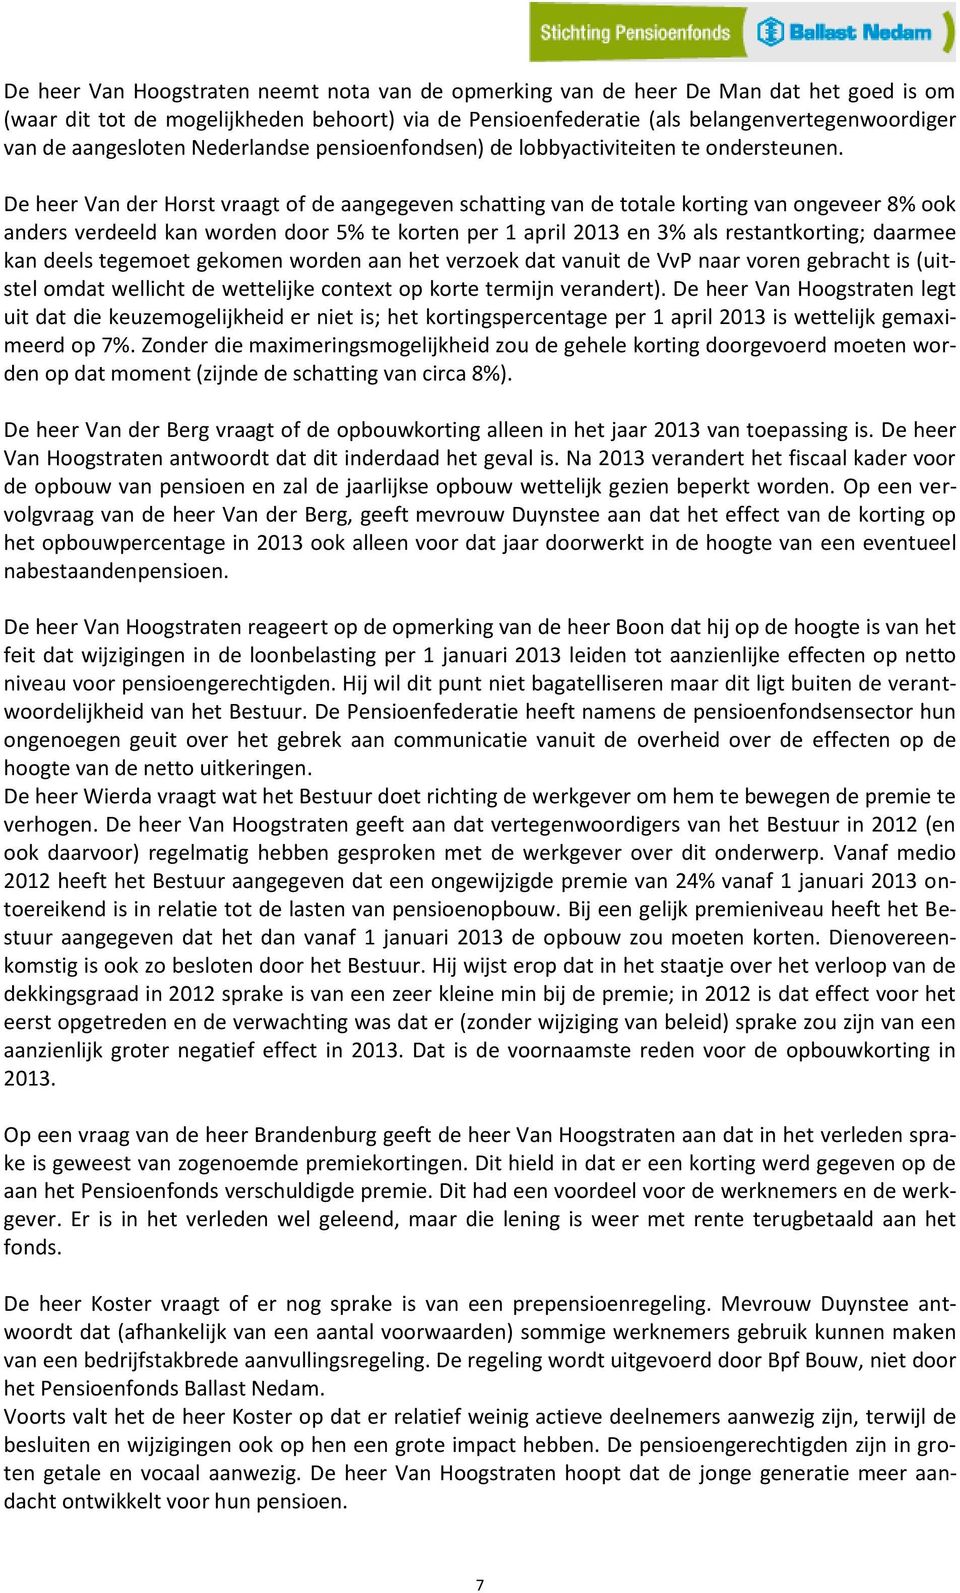 De heer Van der Horst vraagt of de aangegeven schatting van de totale korting van ongeveer 8% ook anders verdeeld kan worden door 5% te korten per 1 april 2013 en 3% als restantkorting; daarmee kan